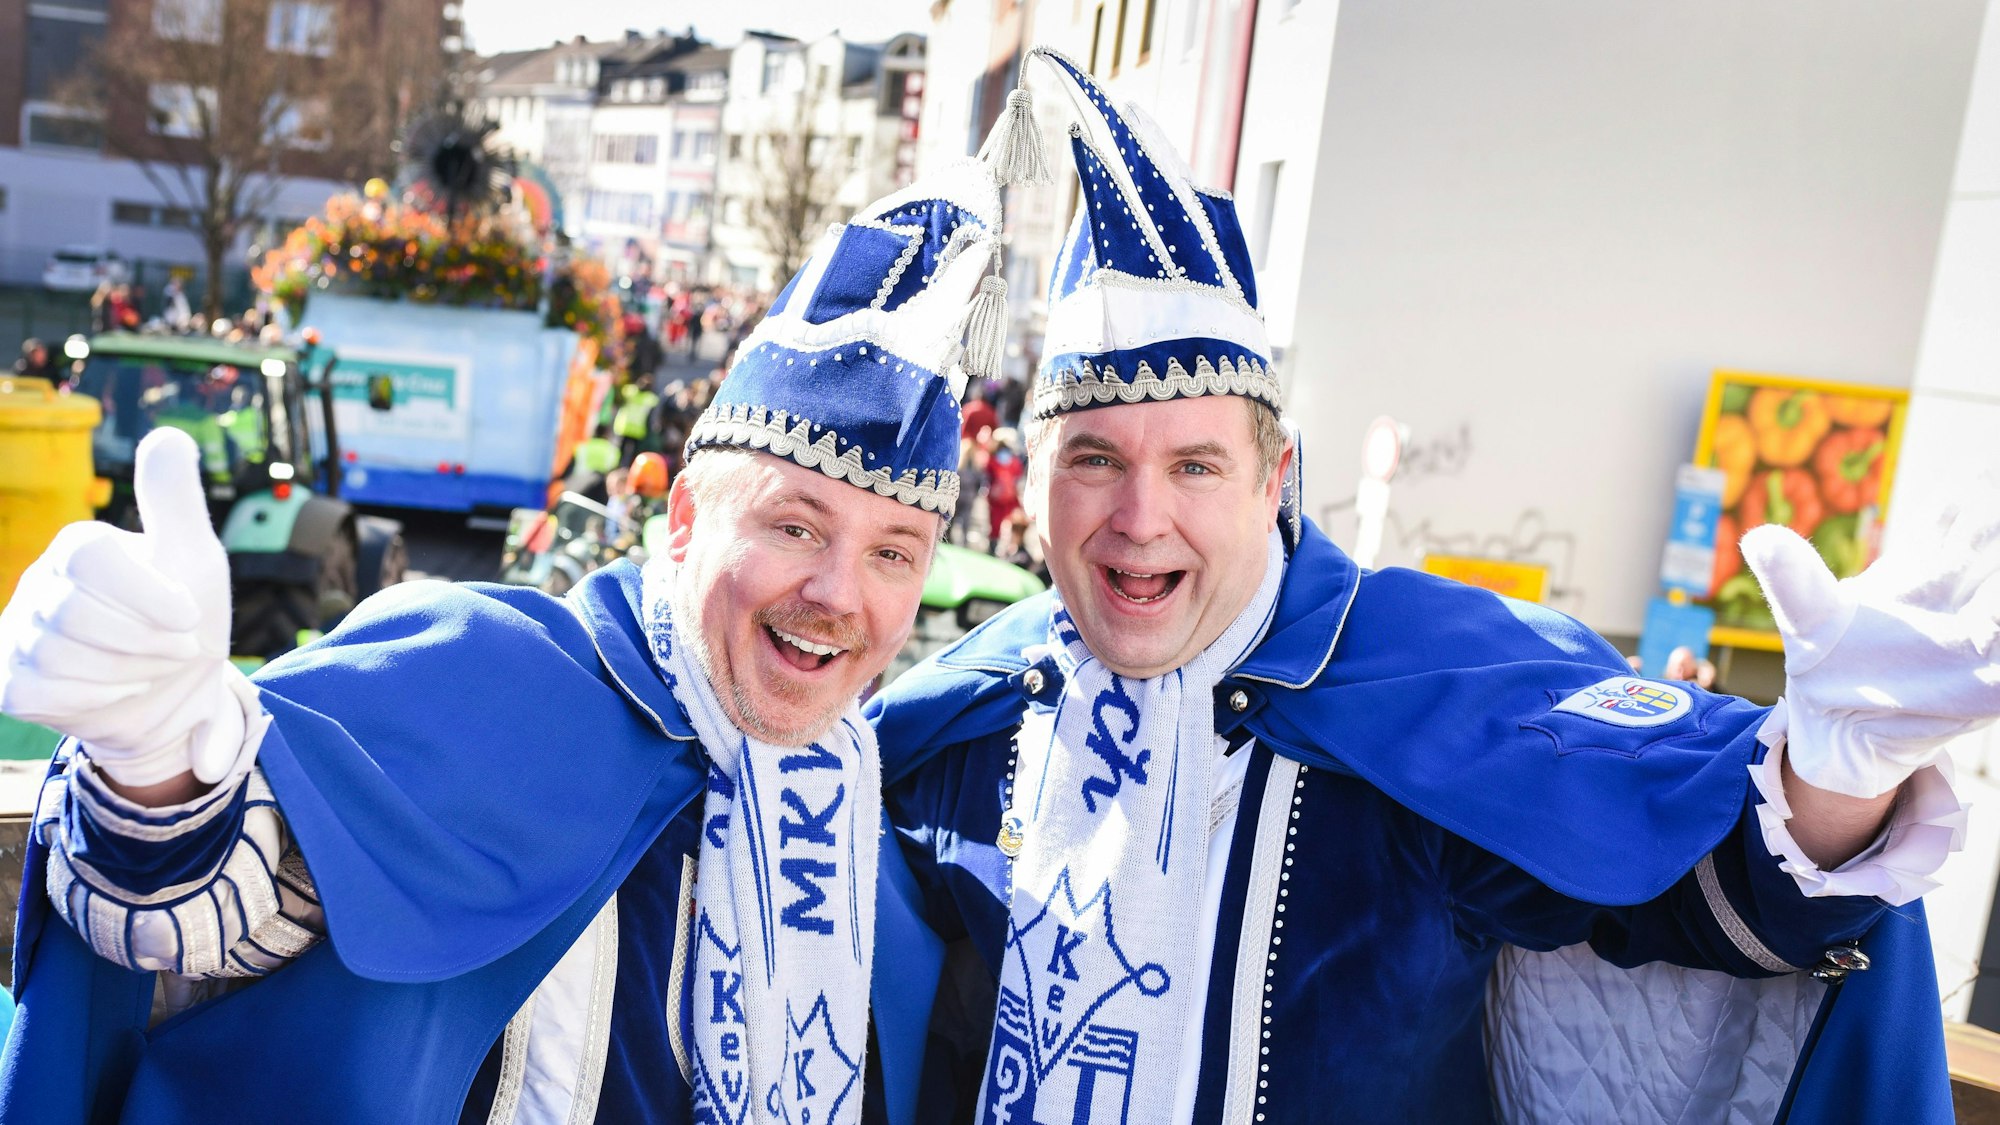 Das Prinzenpaar Axel Ladleif (l) und Thorsten Neumann beim Veilchendienstagszug in Mönchengladbach am 25. Februar 2020. Die Prinzenproklamation 2021 wurde auf das kommende Jahr verschoben.